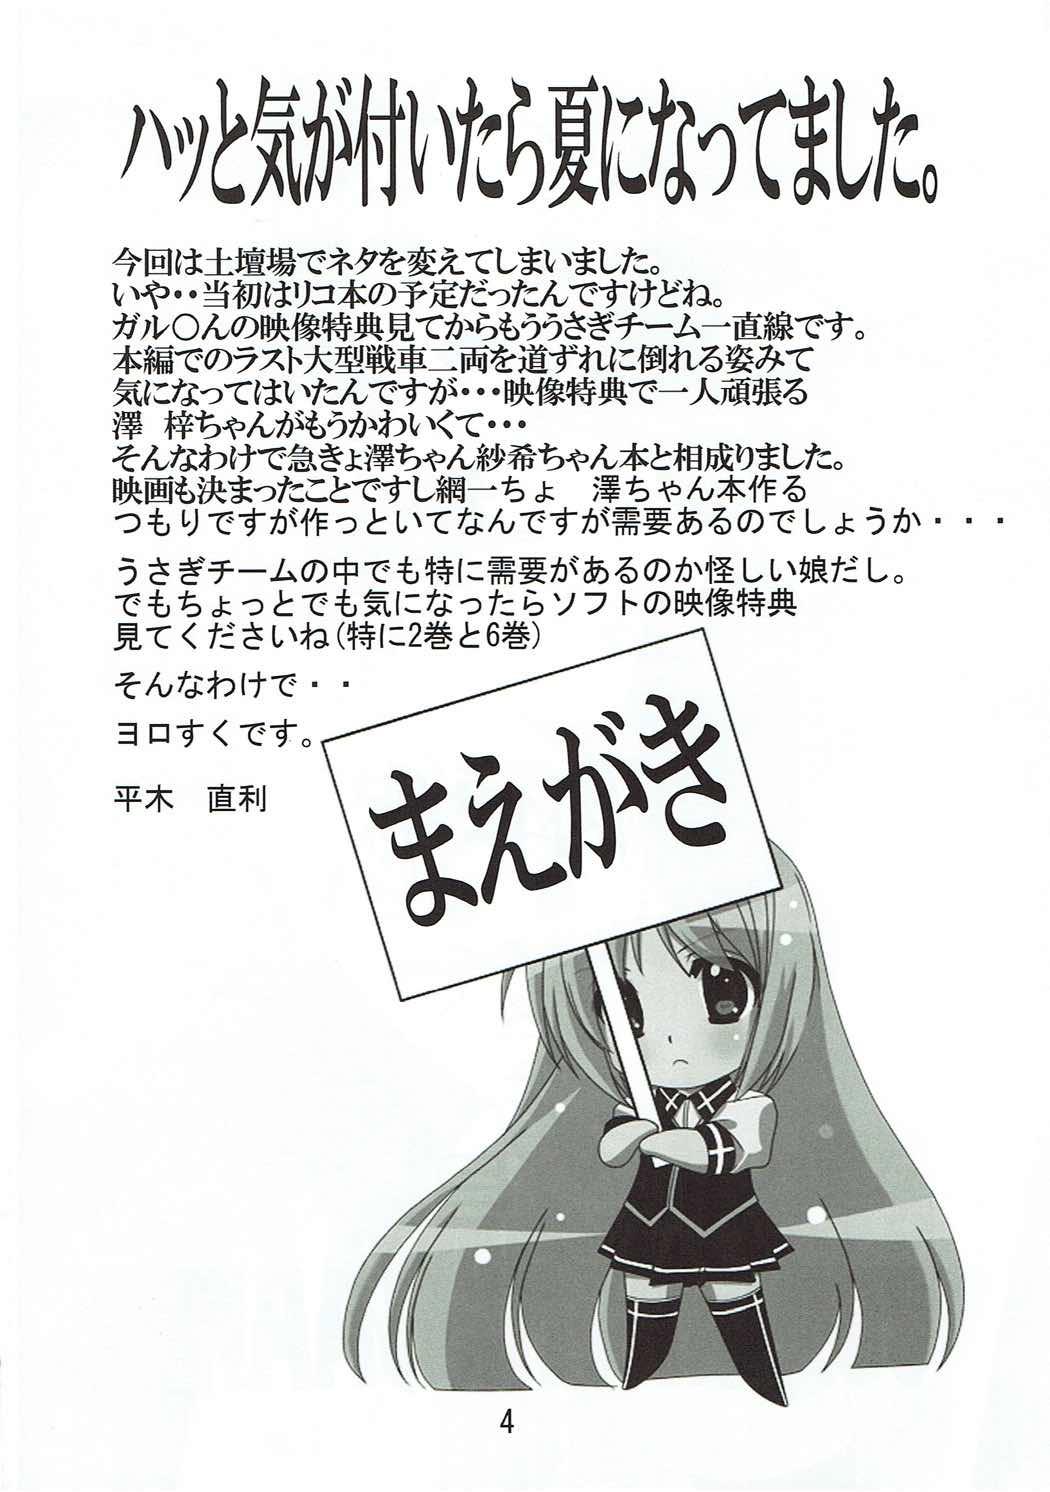 Rub Usagi no Me wa Akai - Girls und panzer Toes - Page 3